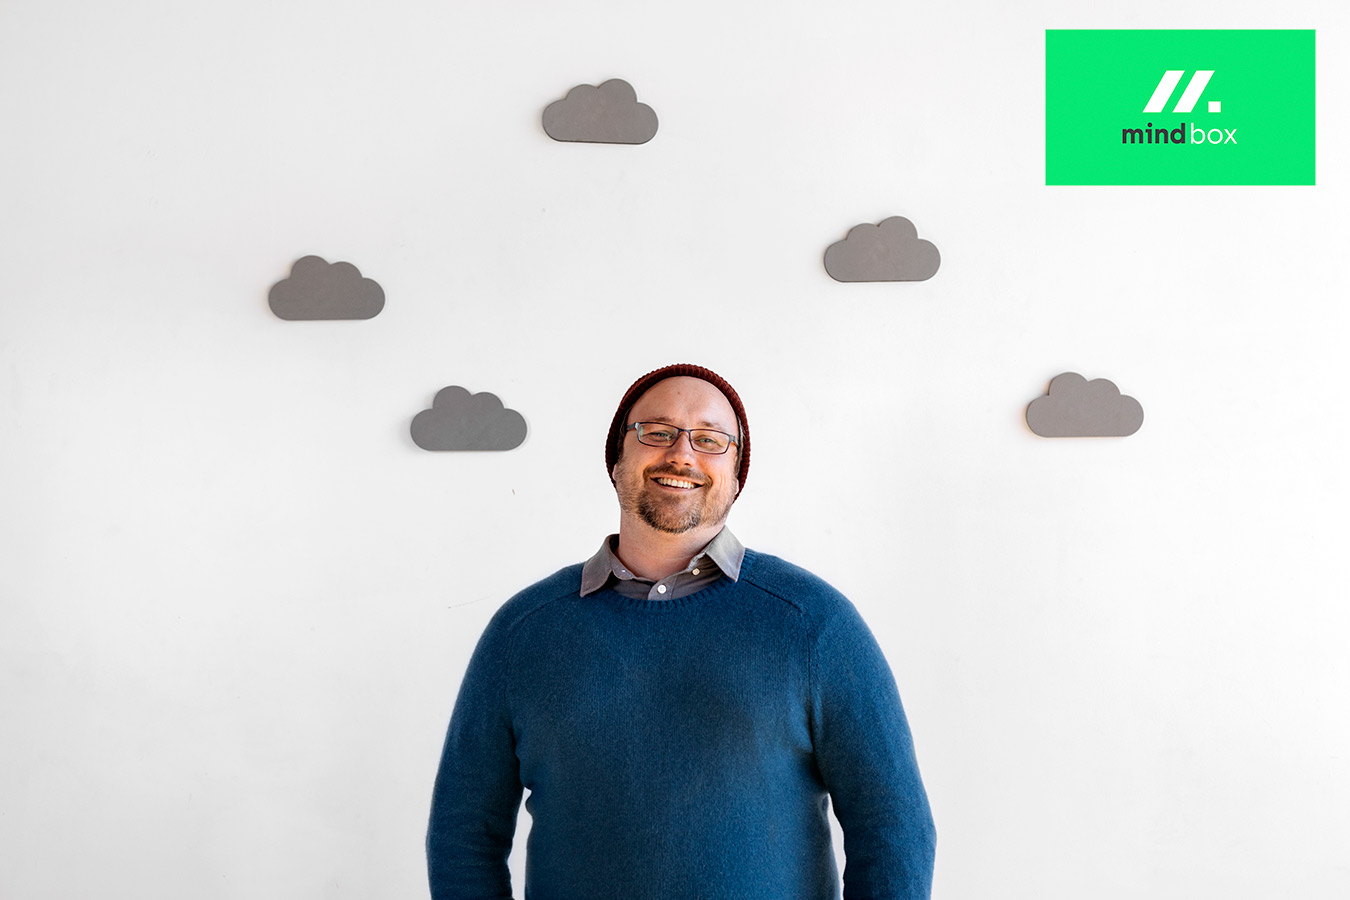 cloud native helpen we bedrijven zoals het uwe te slagen in het cloudtijdperk